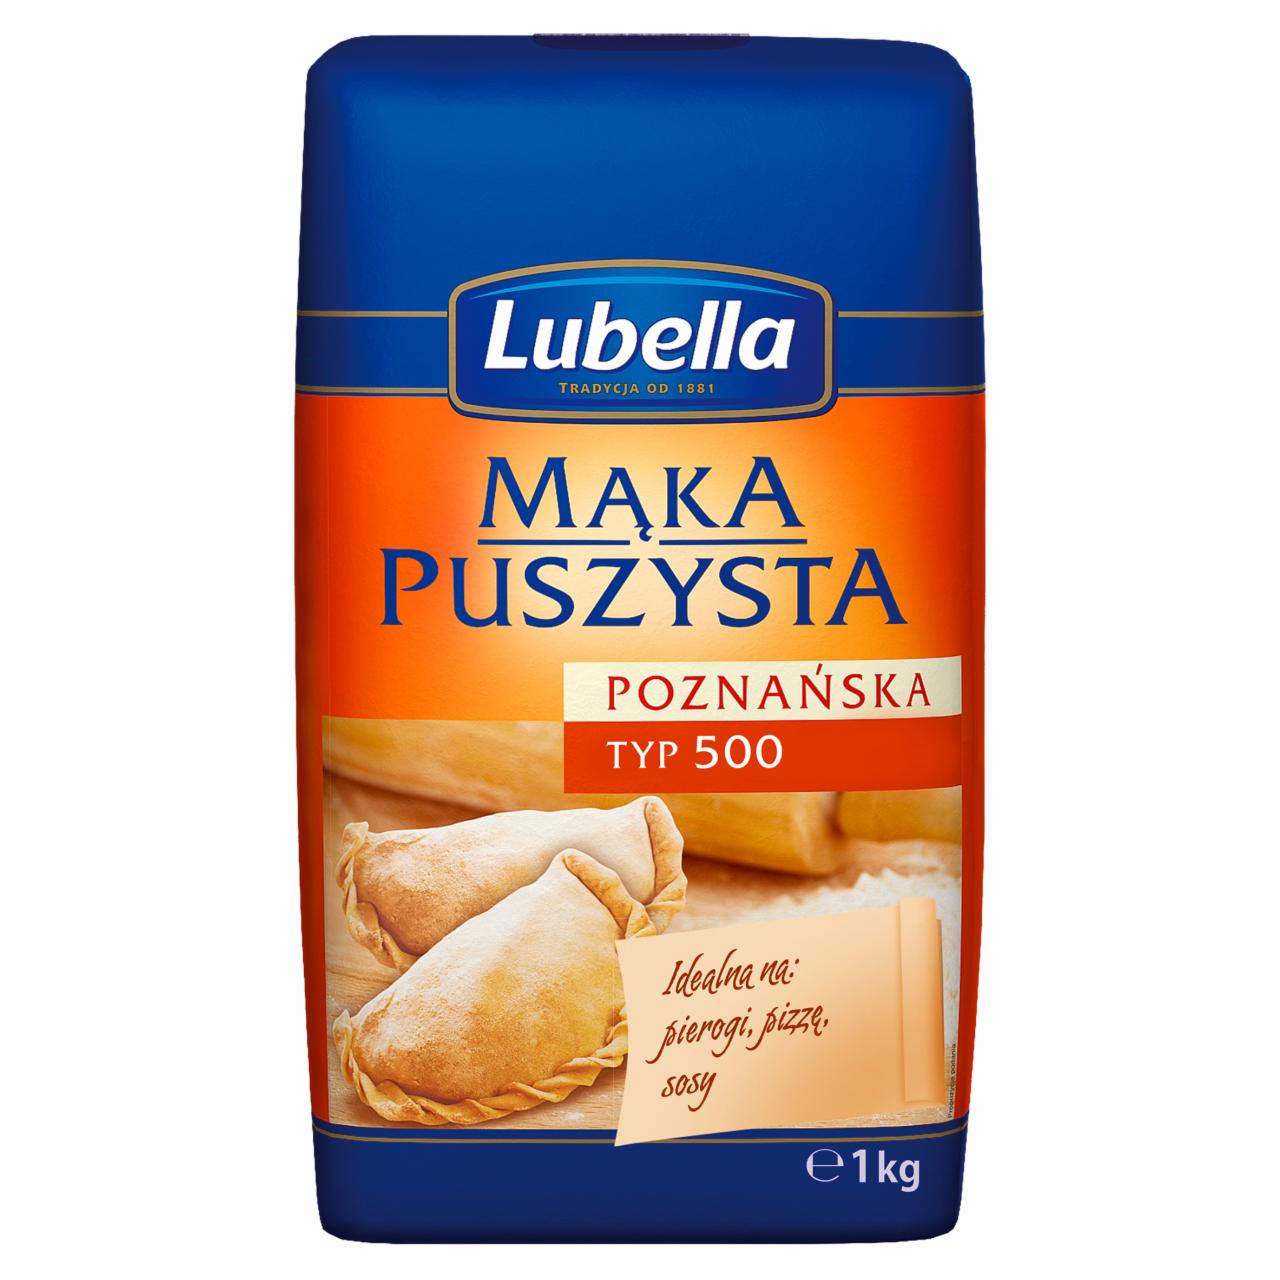 Zdjęcia - Lubella Mąka poznańska puszysta typ 500 1 kg